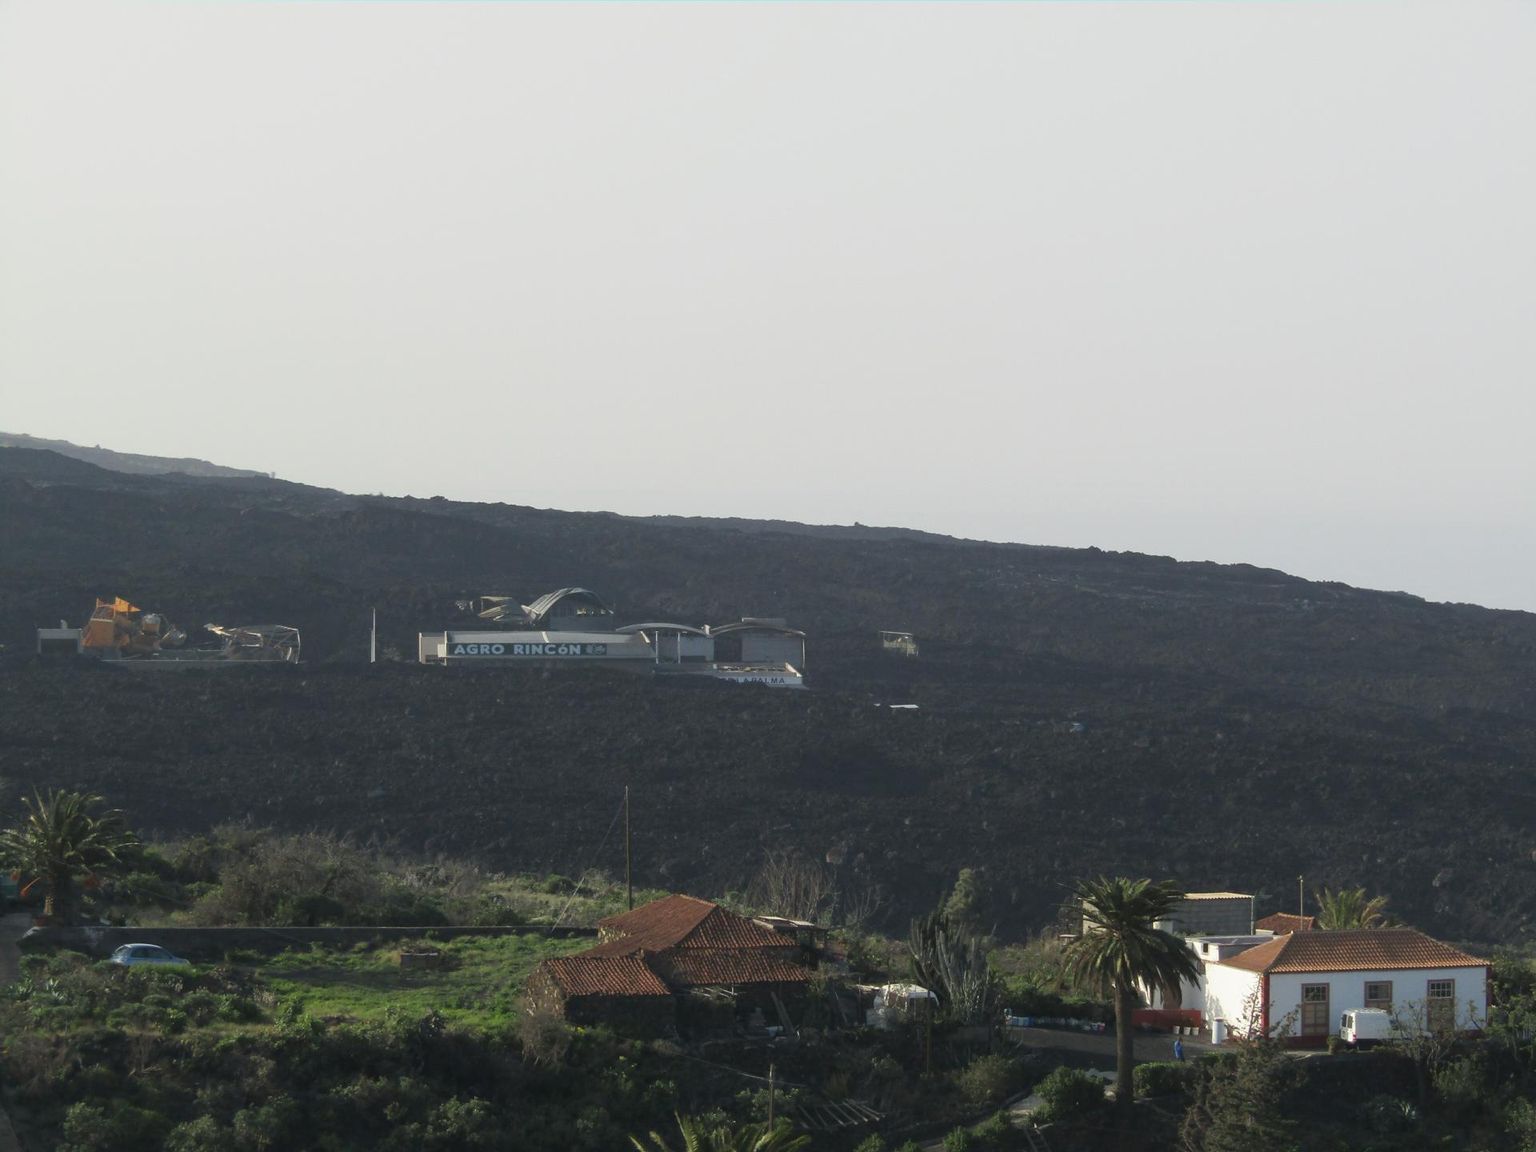 Laavavoo teele jäänud suur põllumajandussaaduste töötlemise tsehh La Palma lääneosas. 